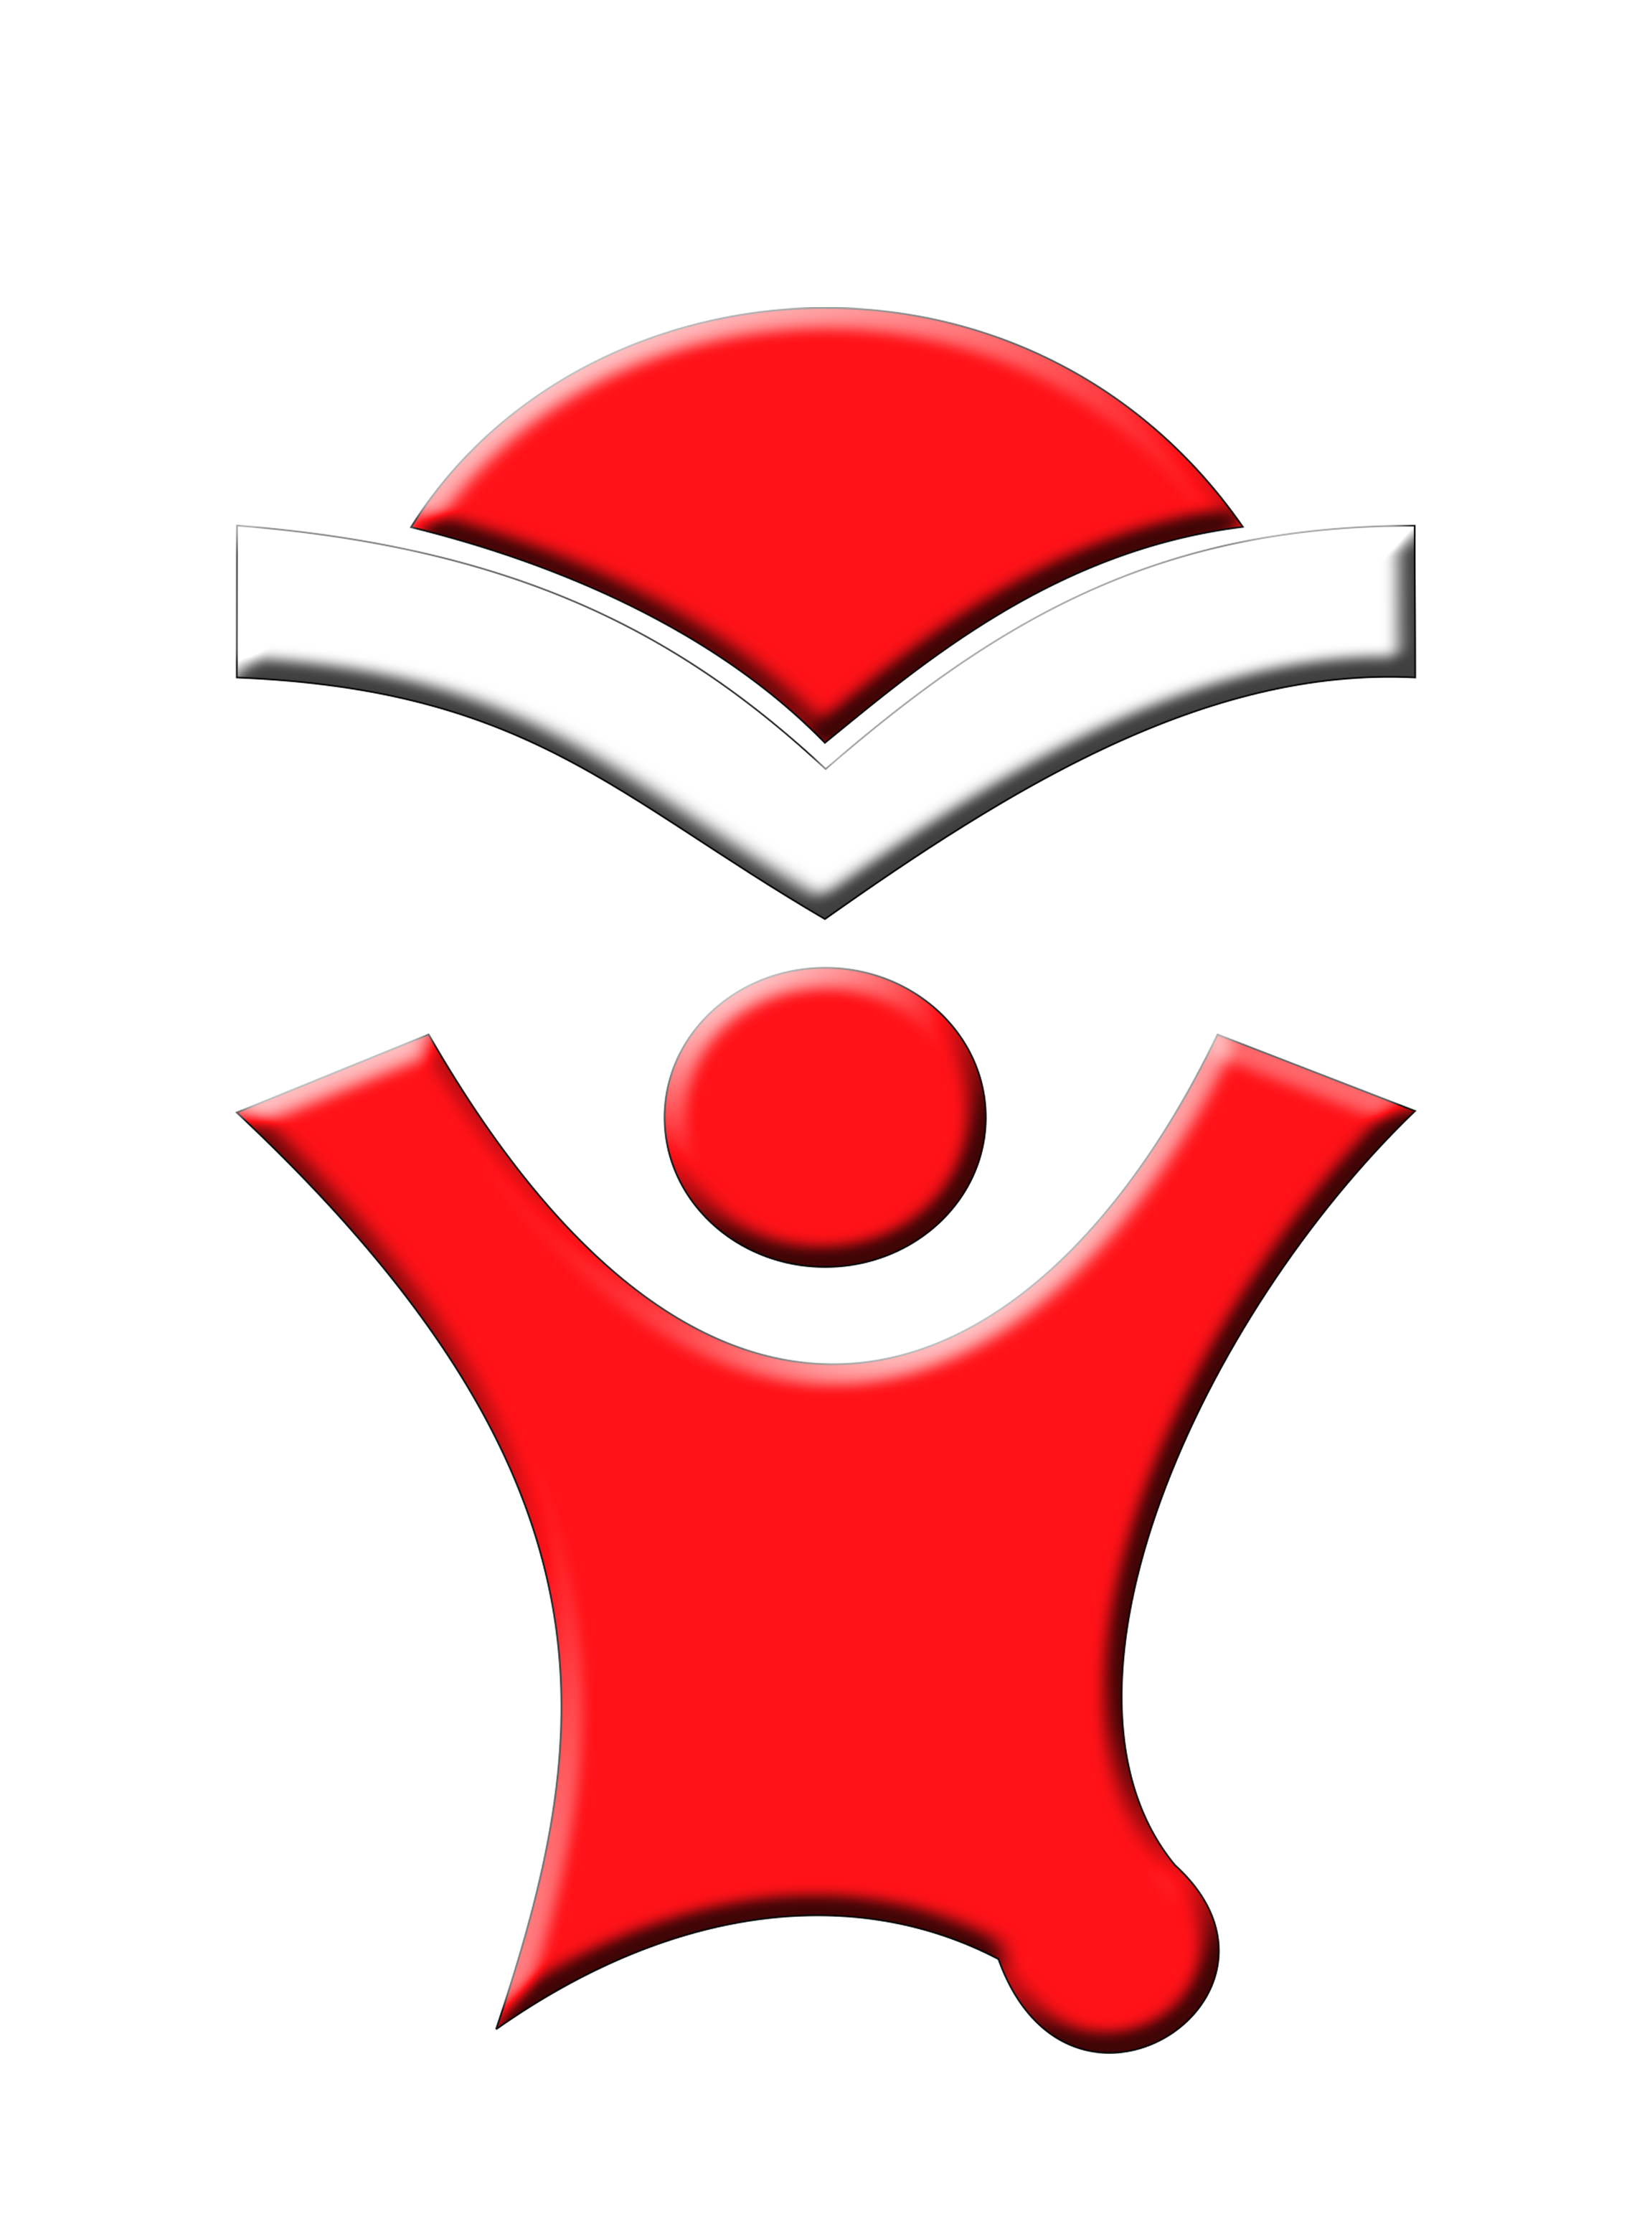 Fatih Bilingual School - Fatih Bilingual School Logo (2480x3508)